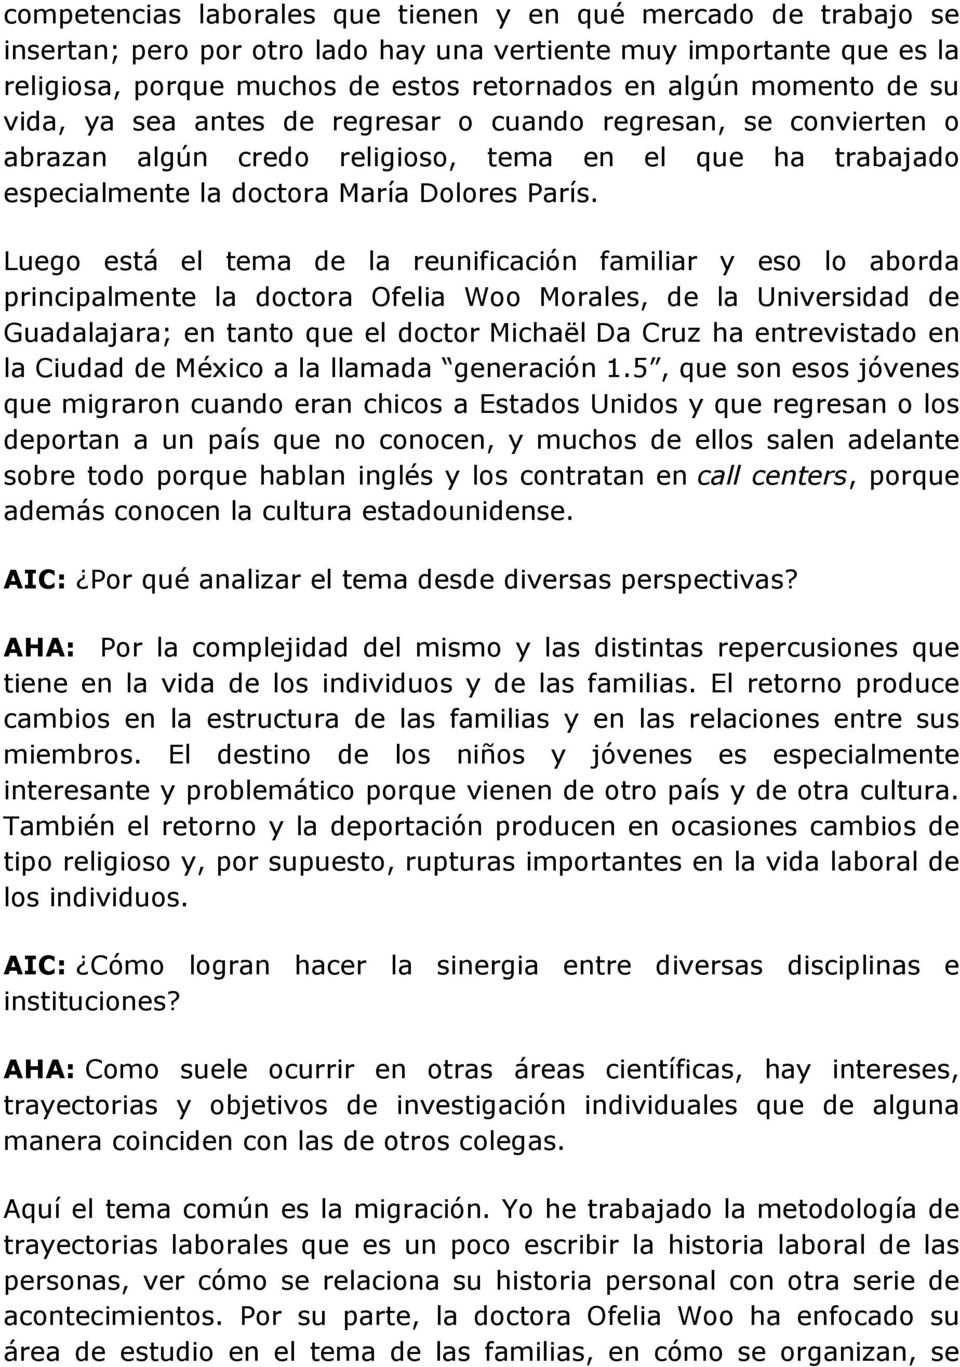 Luego está el tema de la reunificación familiar y eso lo aborda principalmente la doctora Ofelia Woo Morales, de la Universidad de Guadalajara; en tanto que el doctor Michaël Da Cruz ha entrevistado